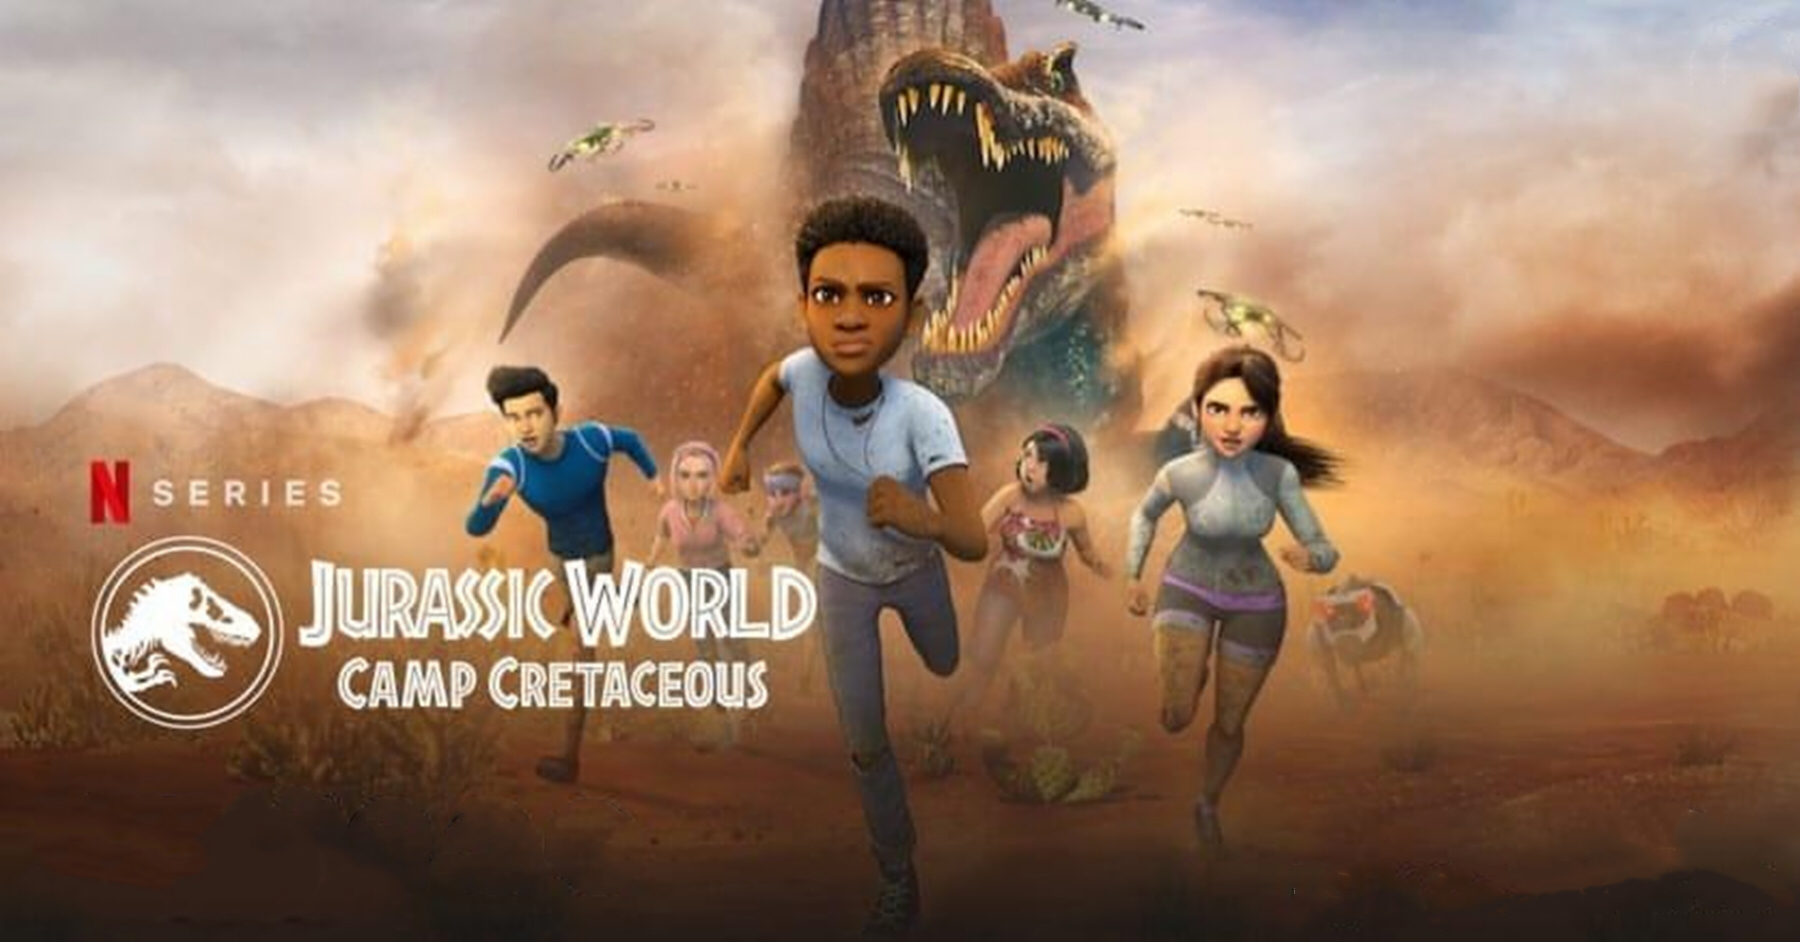 侏罗纪世界:白垩纪营地第四季(2021)/jurassic world:camp